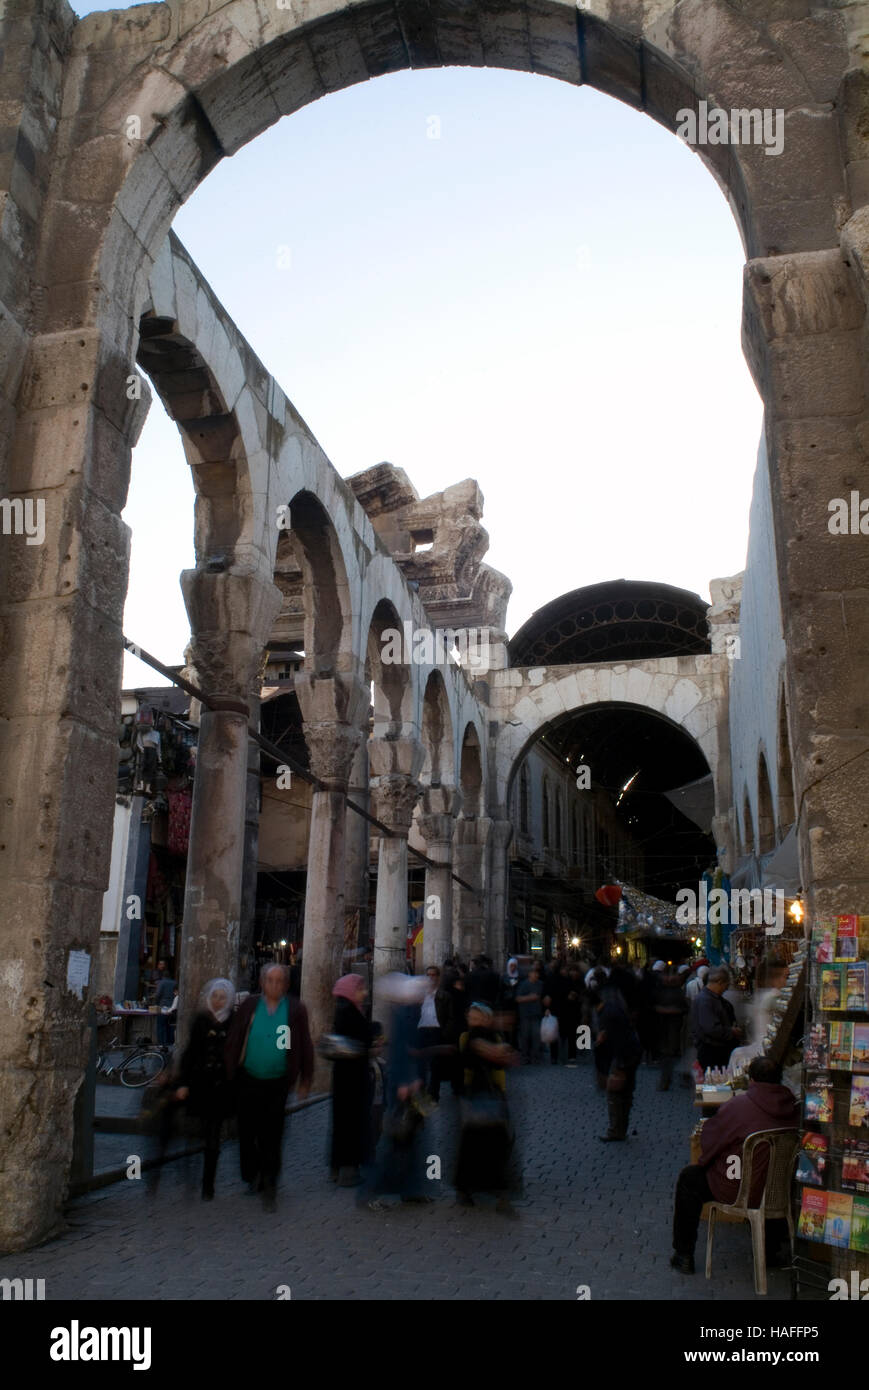 L'entrée du Souk al-Hamidiyeh dans la vieille ville de Damas, Syrie, flanquée de colonnes romaines. Banque D'Images